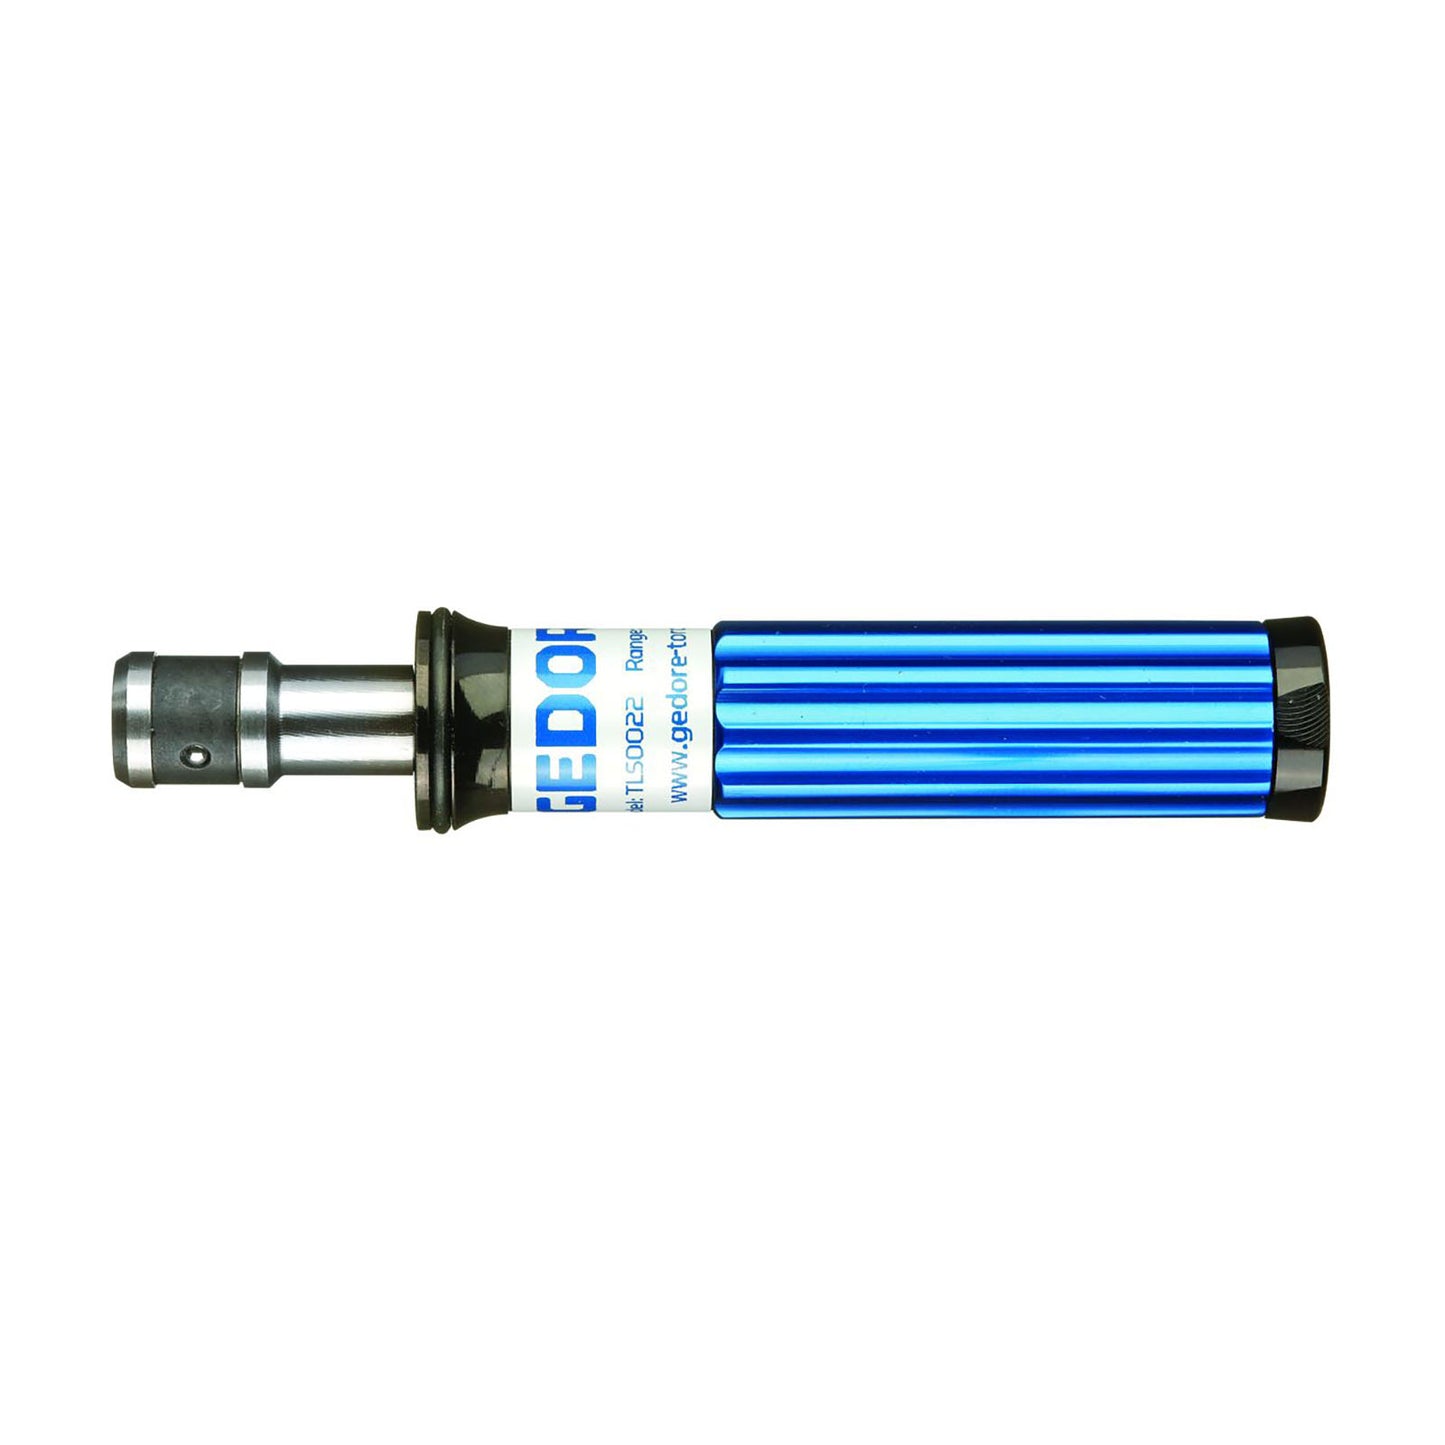 GEDORE STANDARD FH B IFR - Torque screwdriver 1/4" 50-406 cNm 015615 blue (2311135)